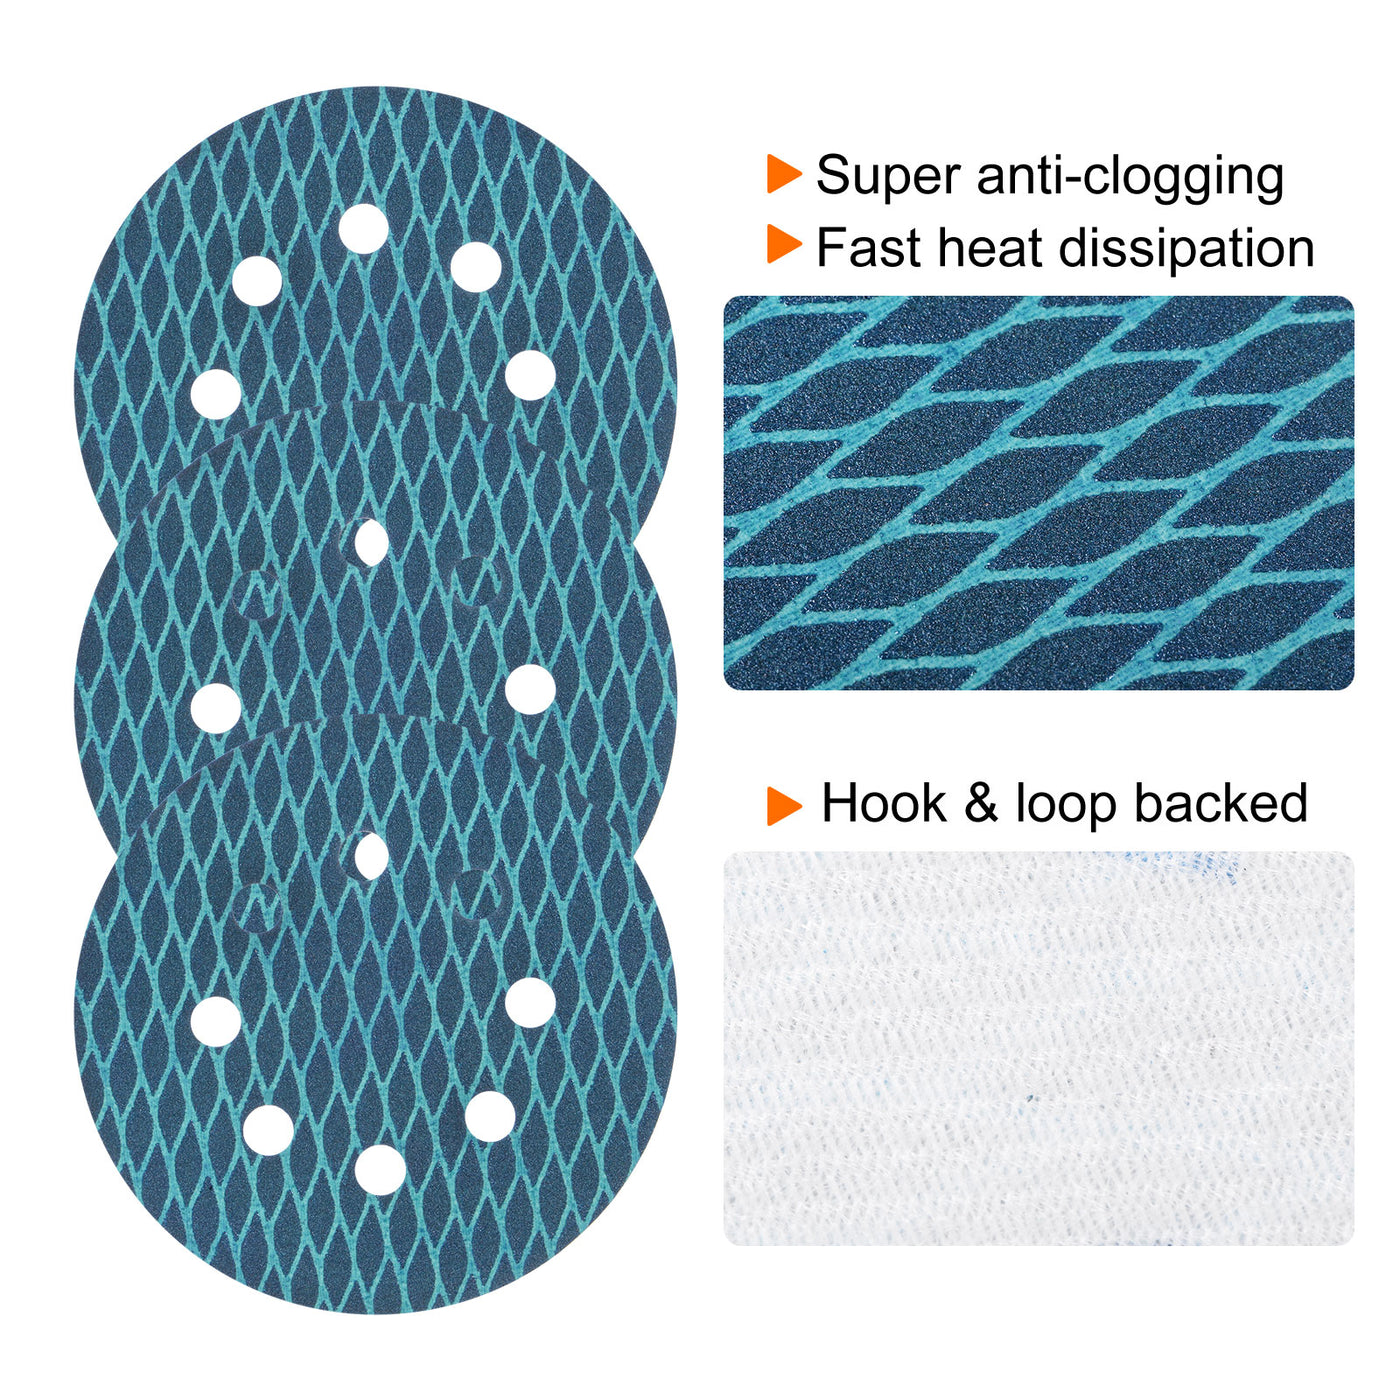 Harfington 50pcs Diamond Shape Sanding Discs 5" 180 Grit Hook & Loop Rhomb Sandpaper 8 Hole